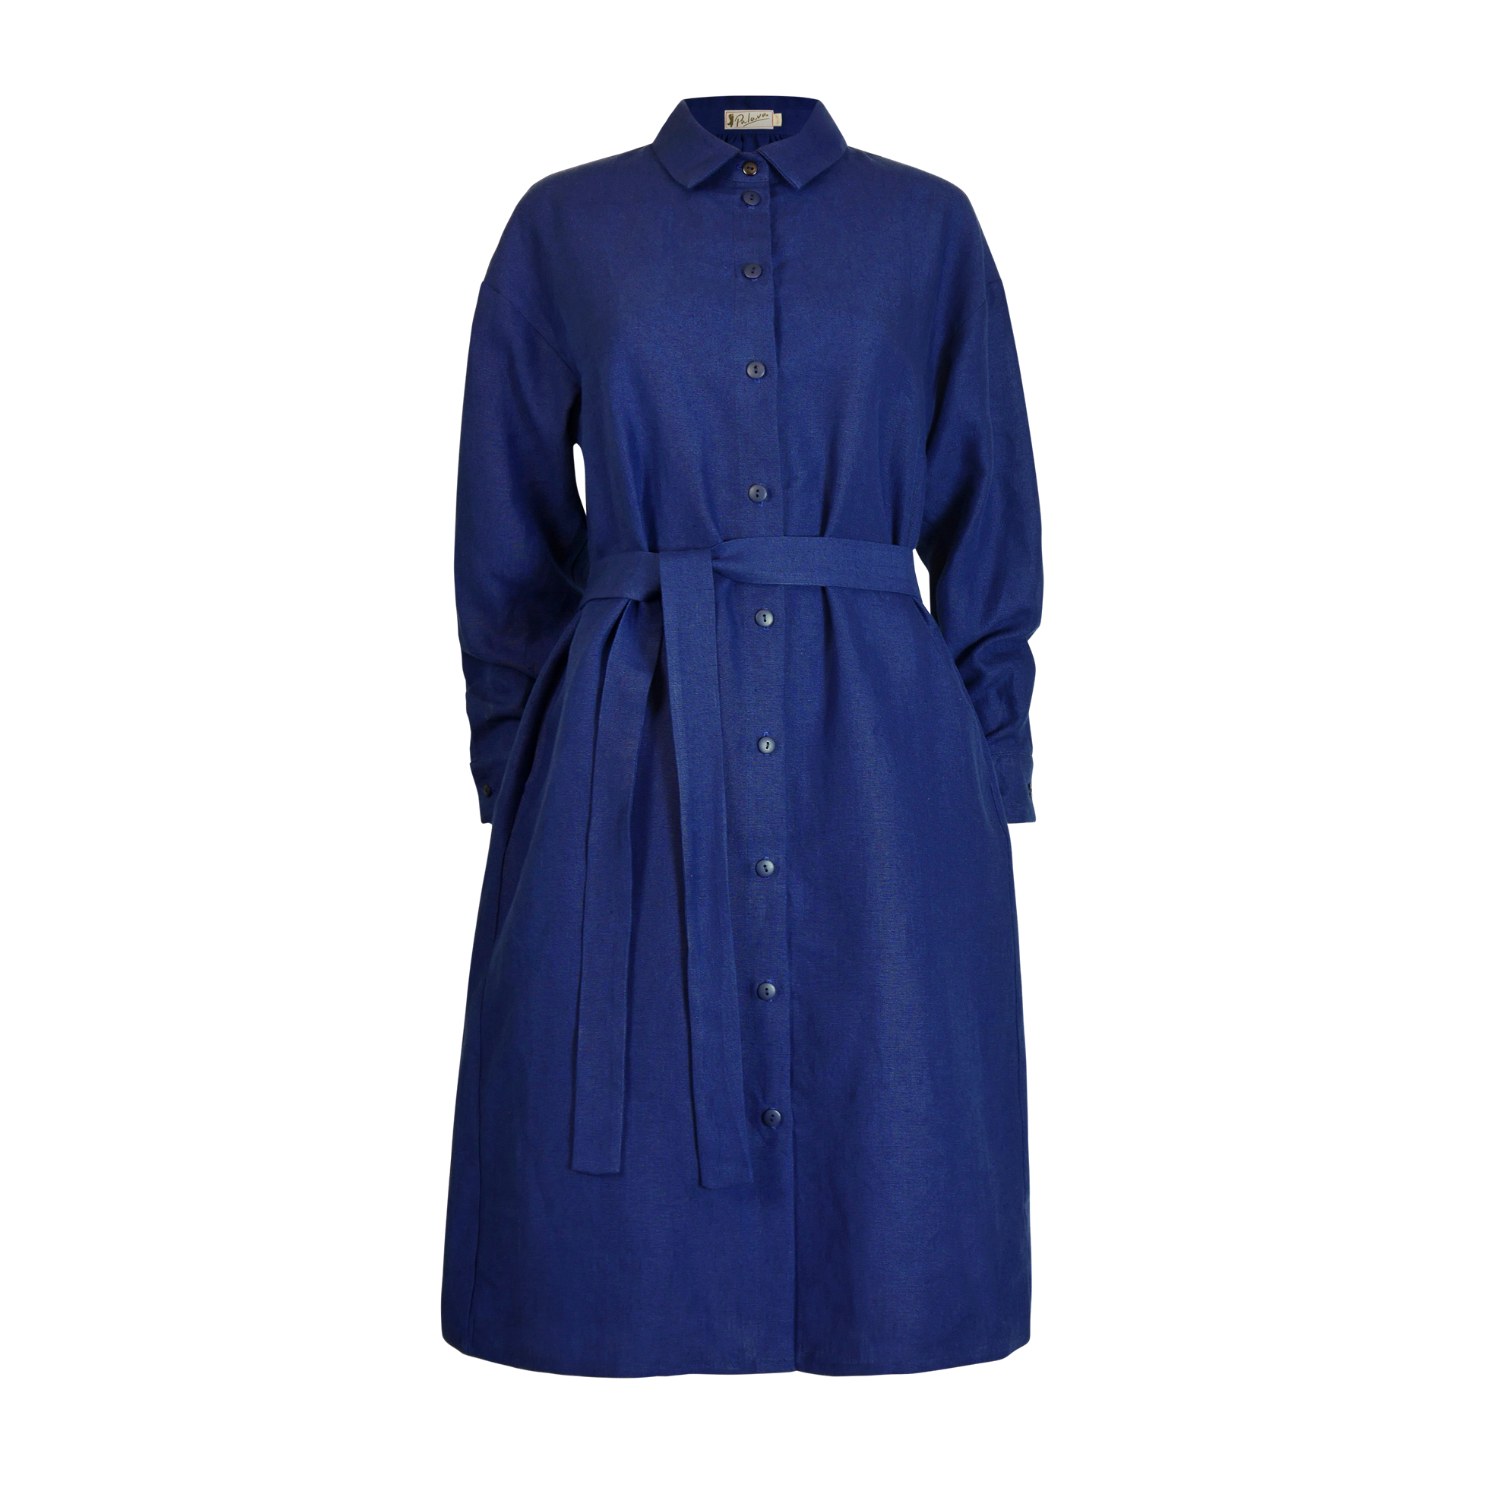 Palava Women's Blue Izzy Dress - Navy Linen